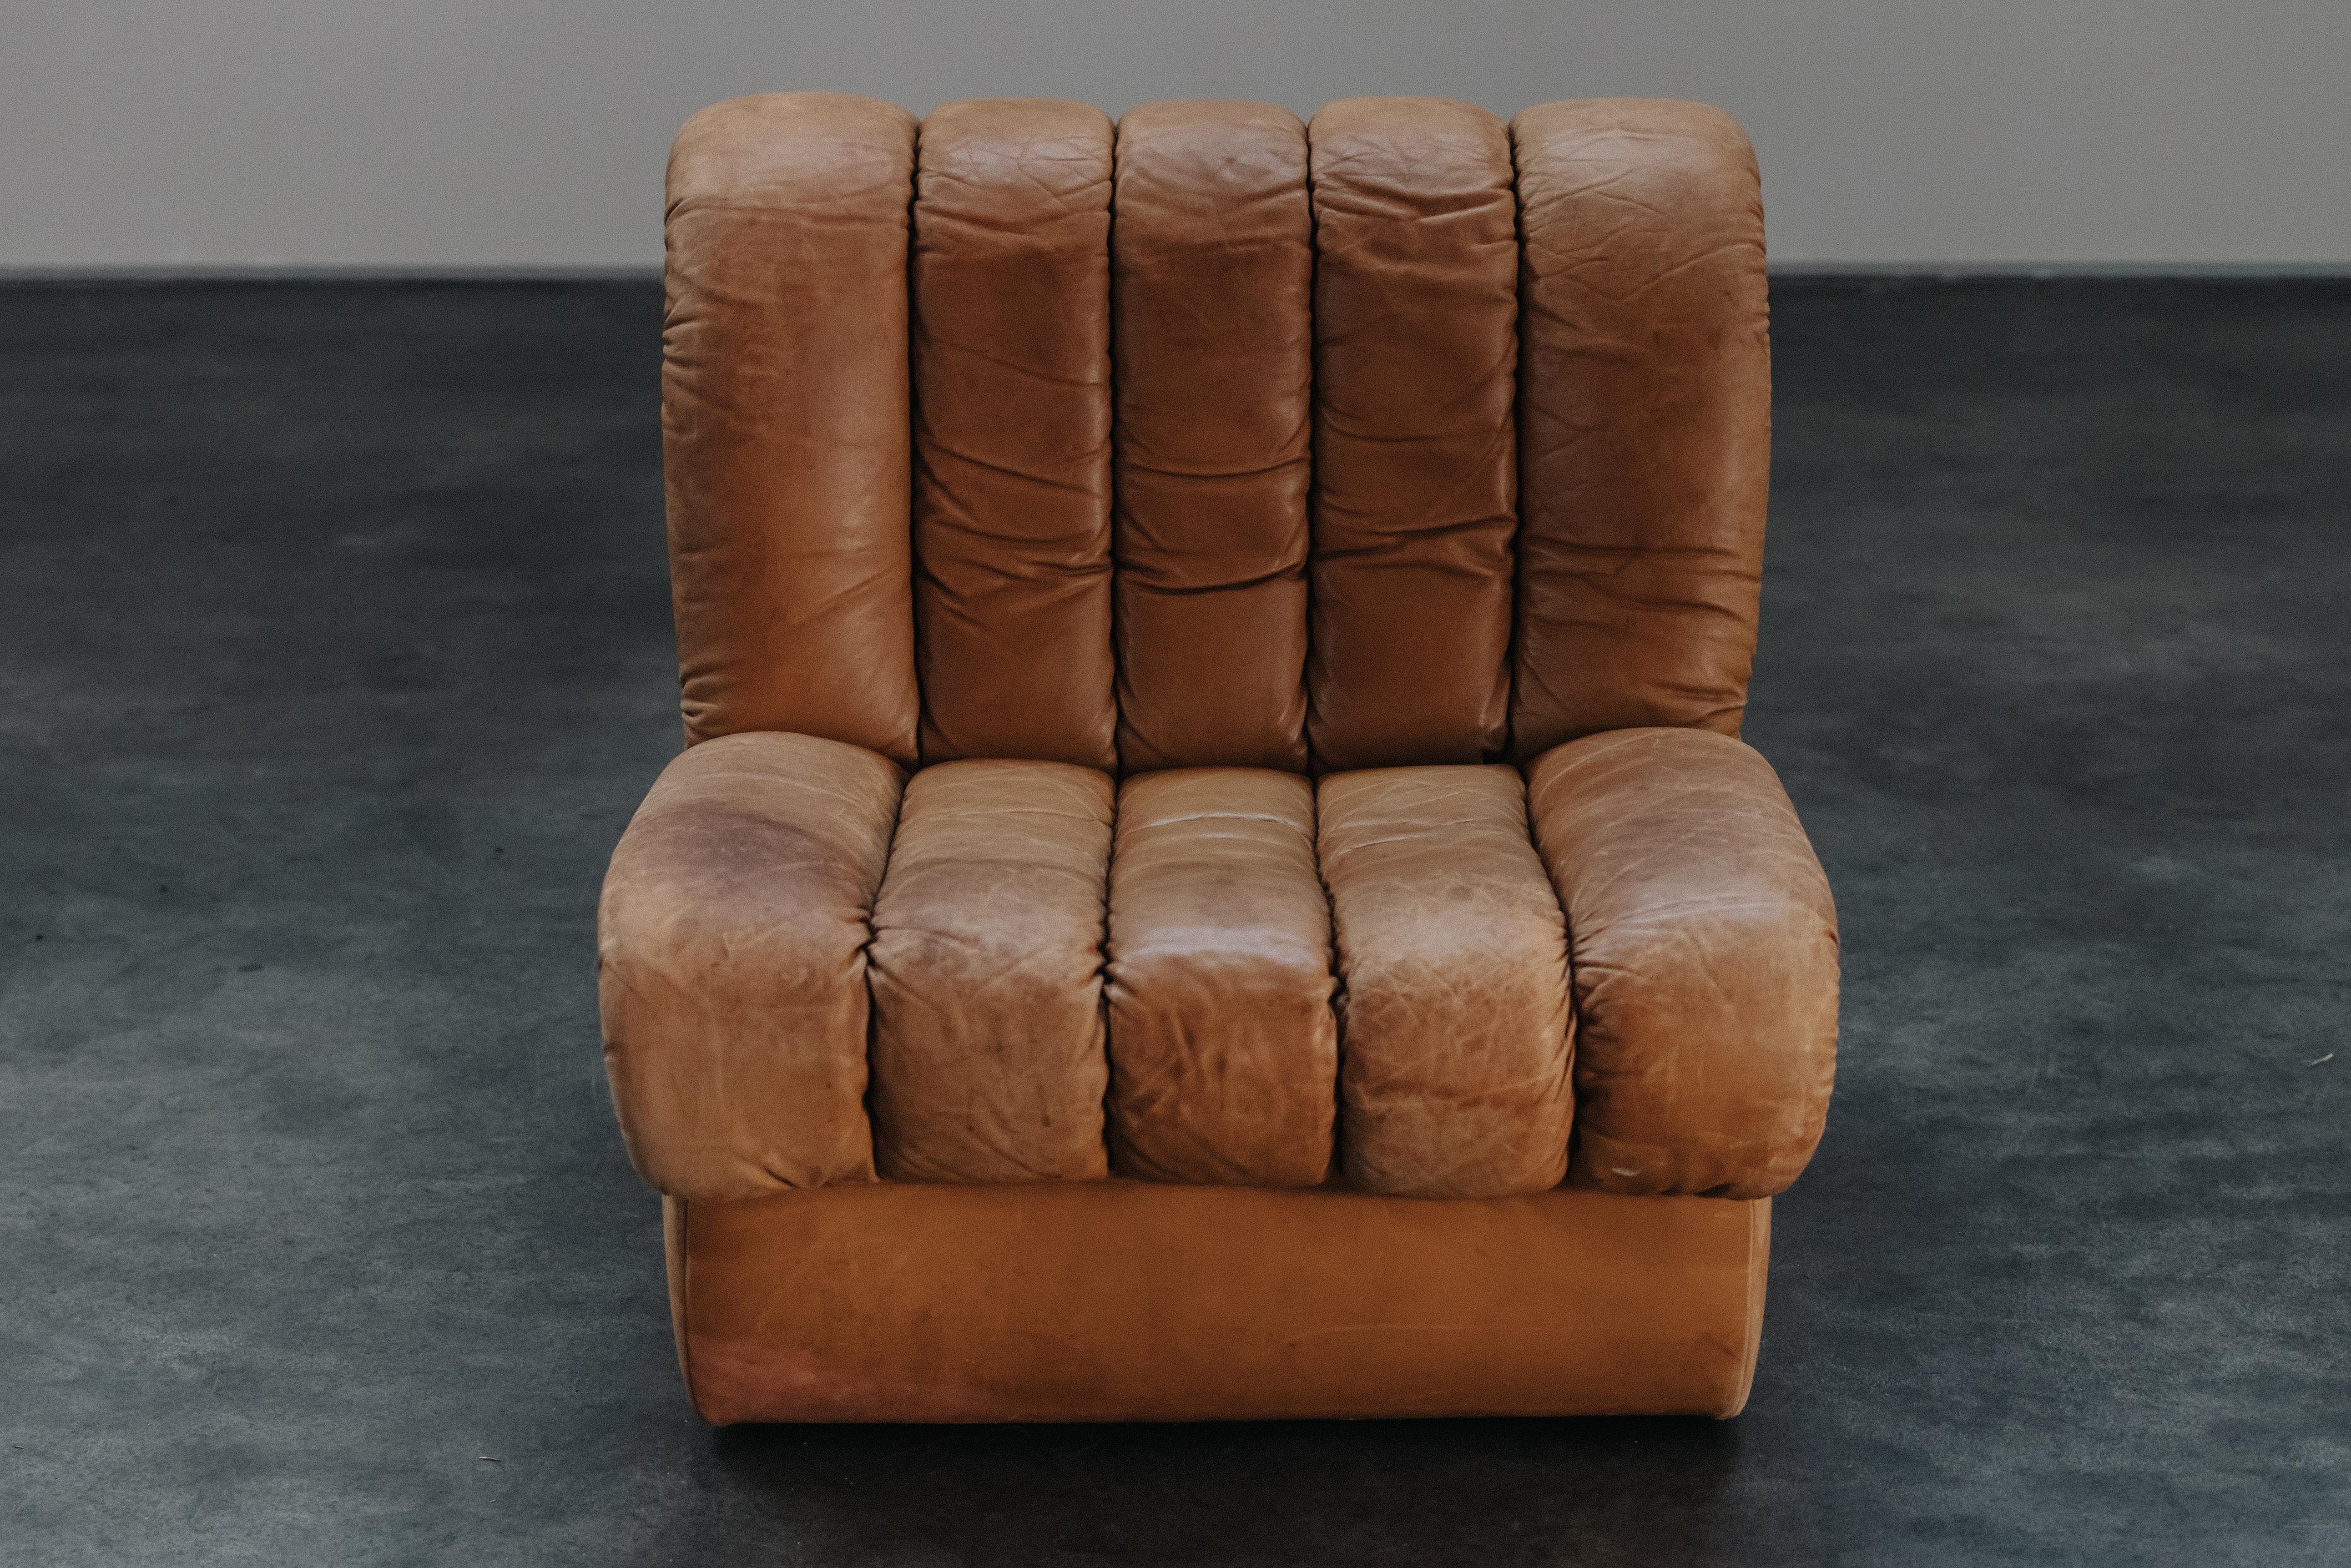 Vintage De Sede DS85 Lounge Chair aus der Schweiz, CIRCA 1970.  Originale cognacfarbene Lederpolsterung mit großer Patina und Gebrauchsspuren.